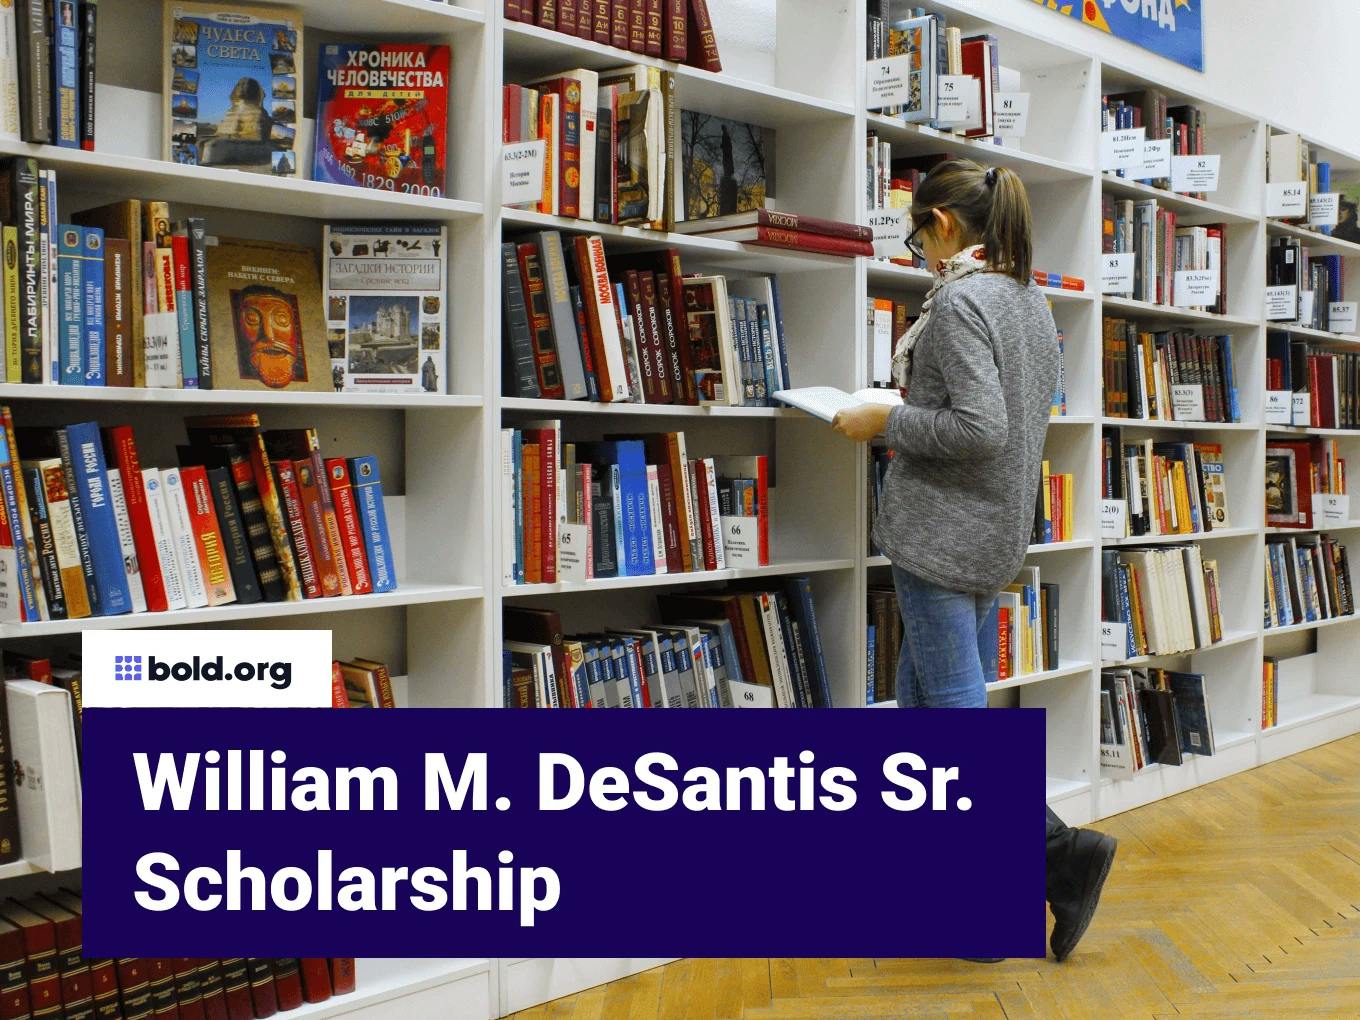 William M. DeSantis Sr. Scholarship